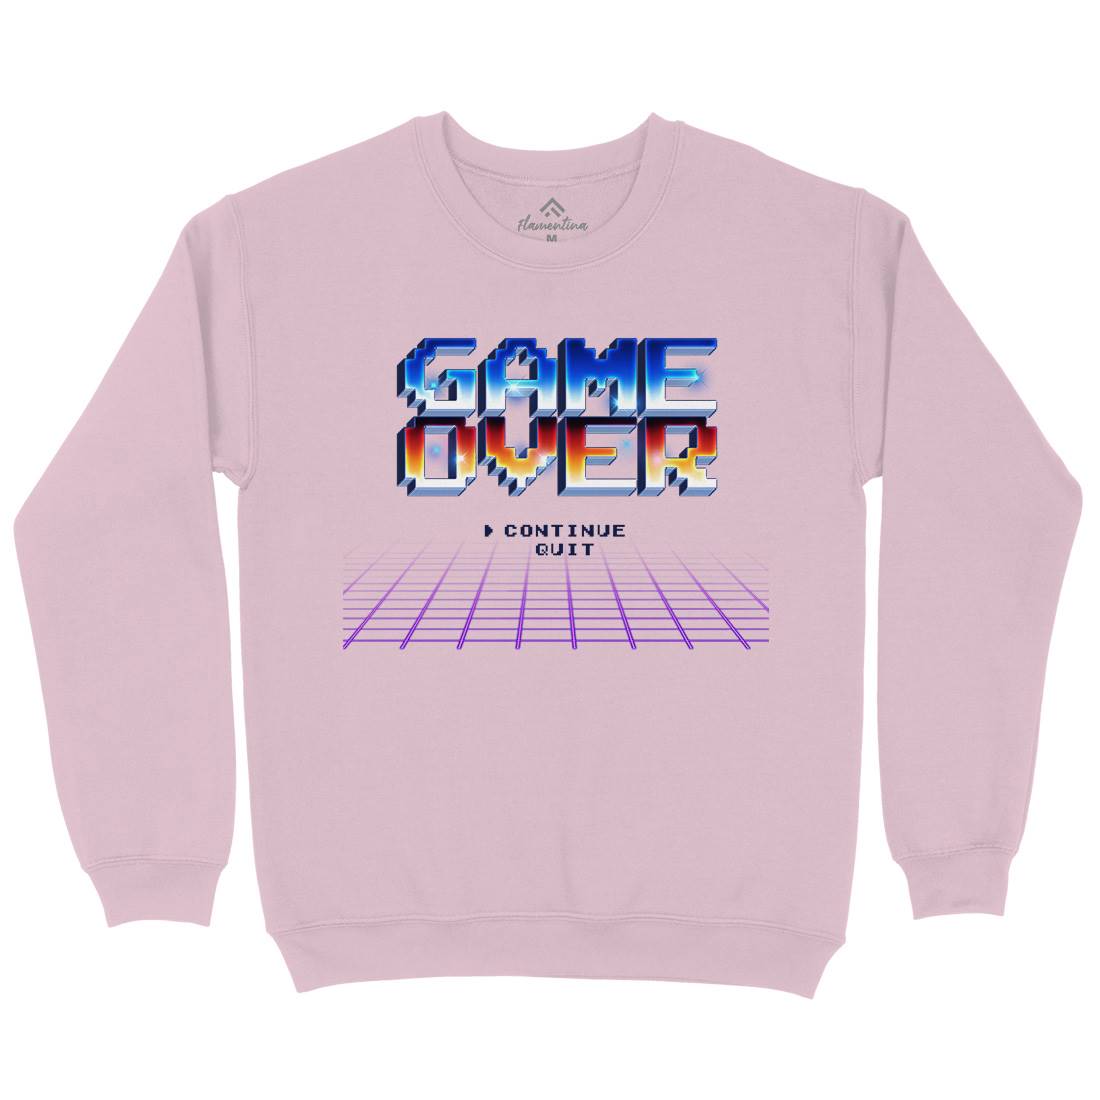 Game Over Kids Crew Neck Sweatshirt Geek B995